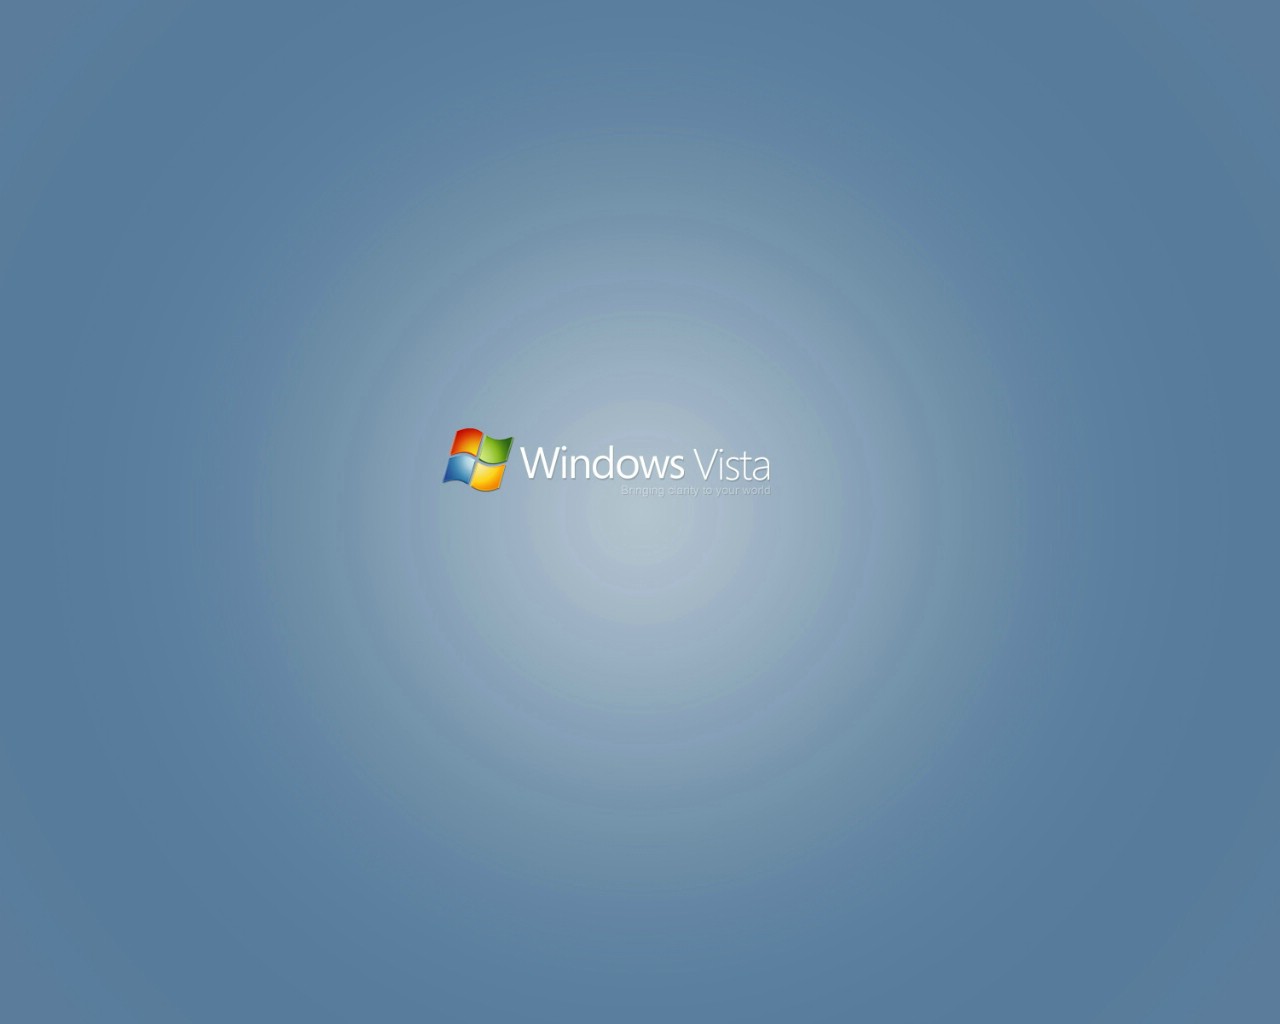 壁纸1280x1024Windows Vista壁纸 壁纸13壁纸 Windows Vista壁纸壁纸 Windows Vista壁纸图片 Windows Vista壁纸素材 系统壁纸 系统图库 系统图片素材桌面壁纸